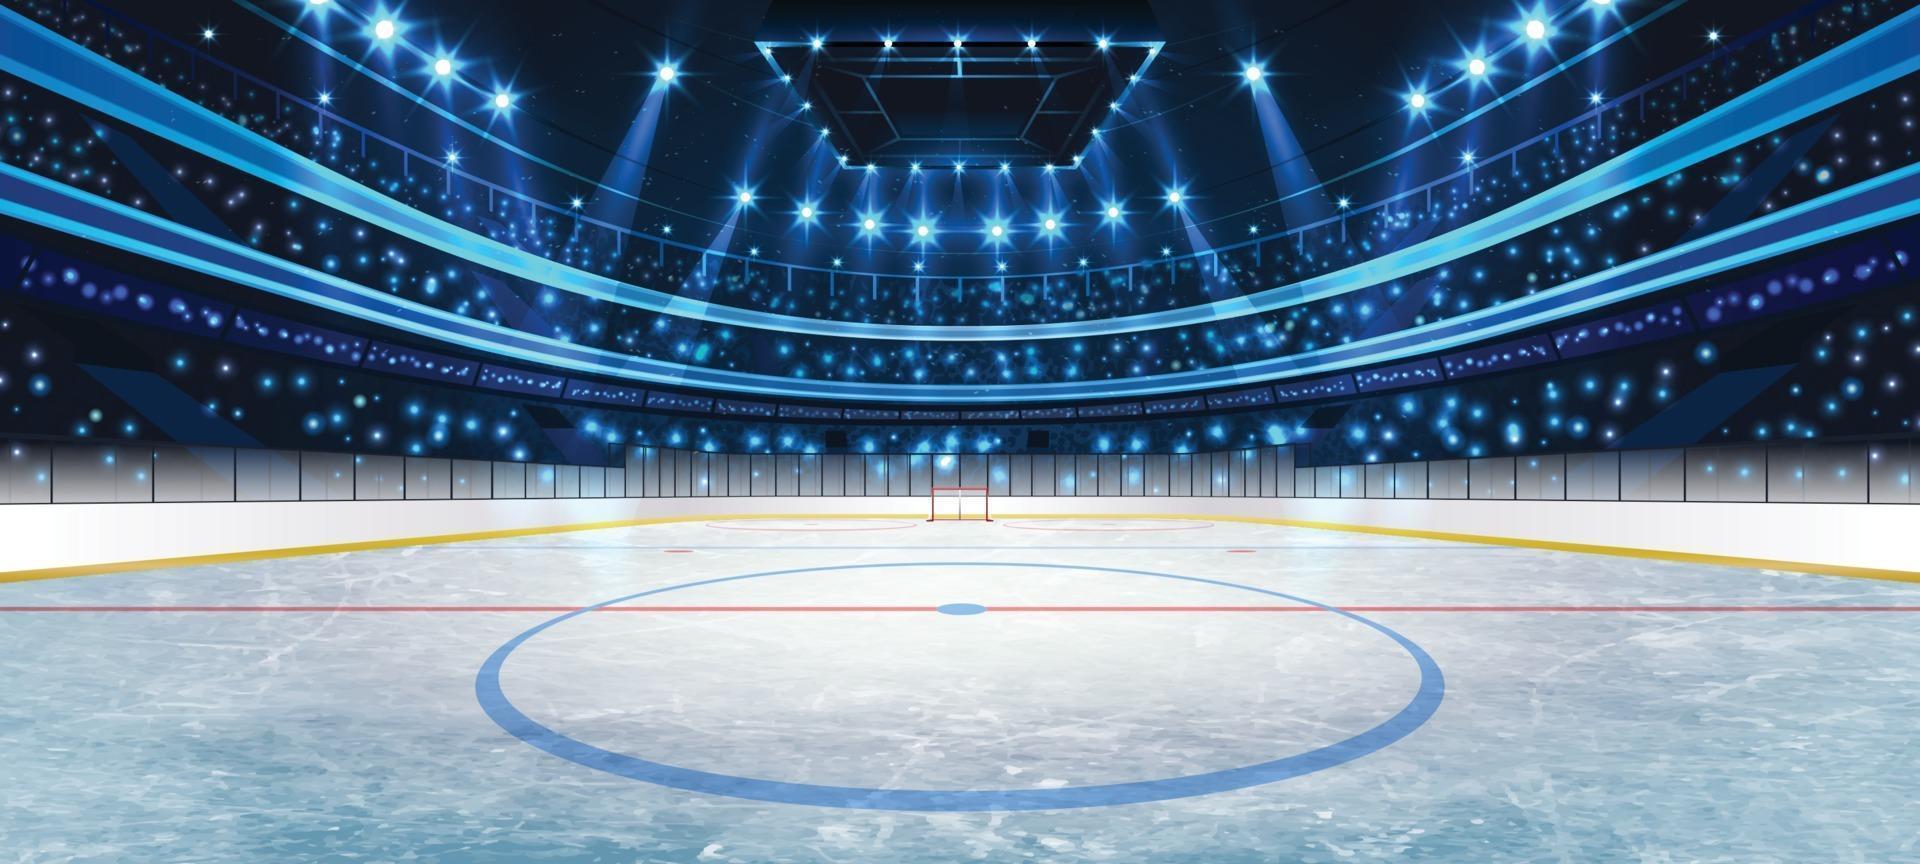 concepto de fondo de arena de hockey sobre hielo vector